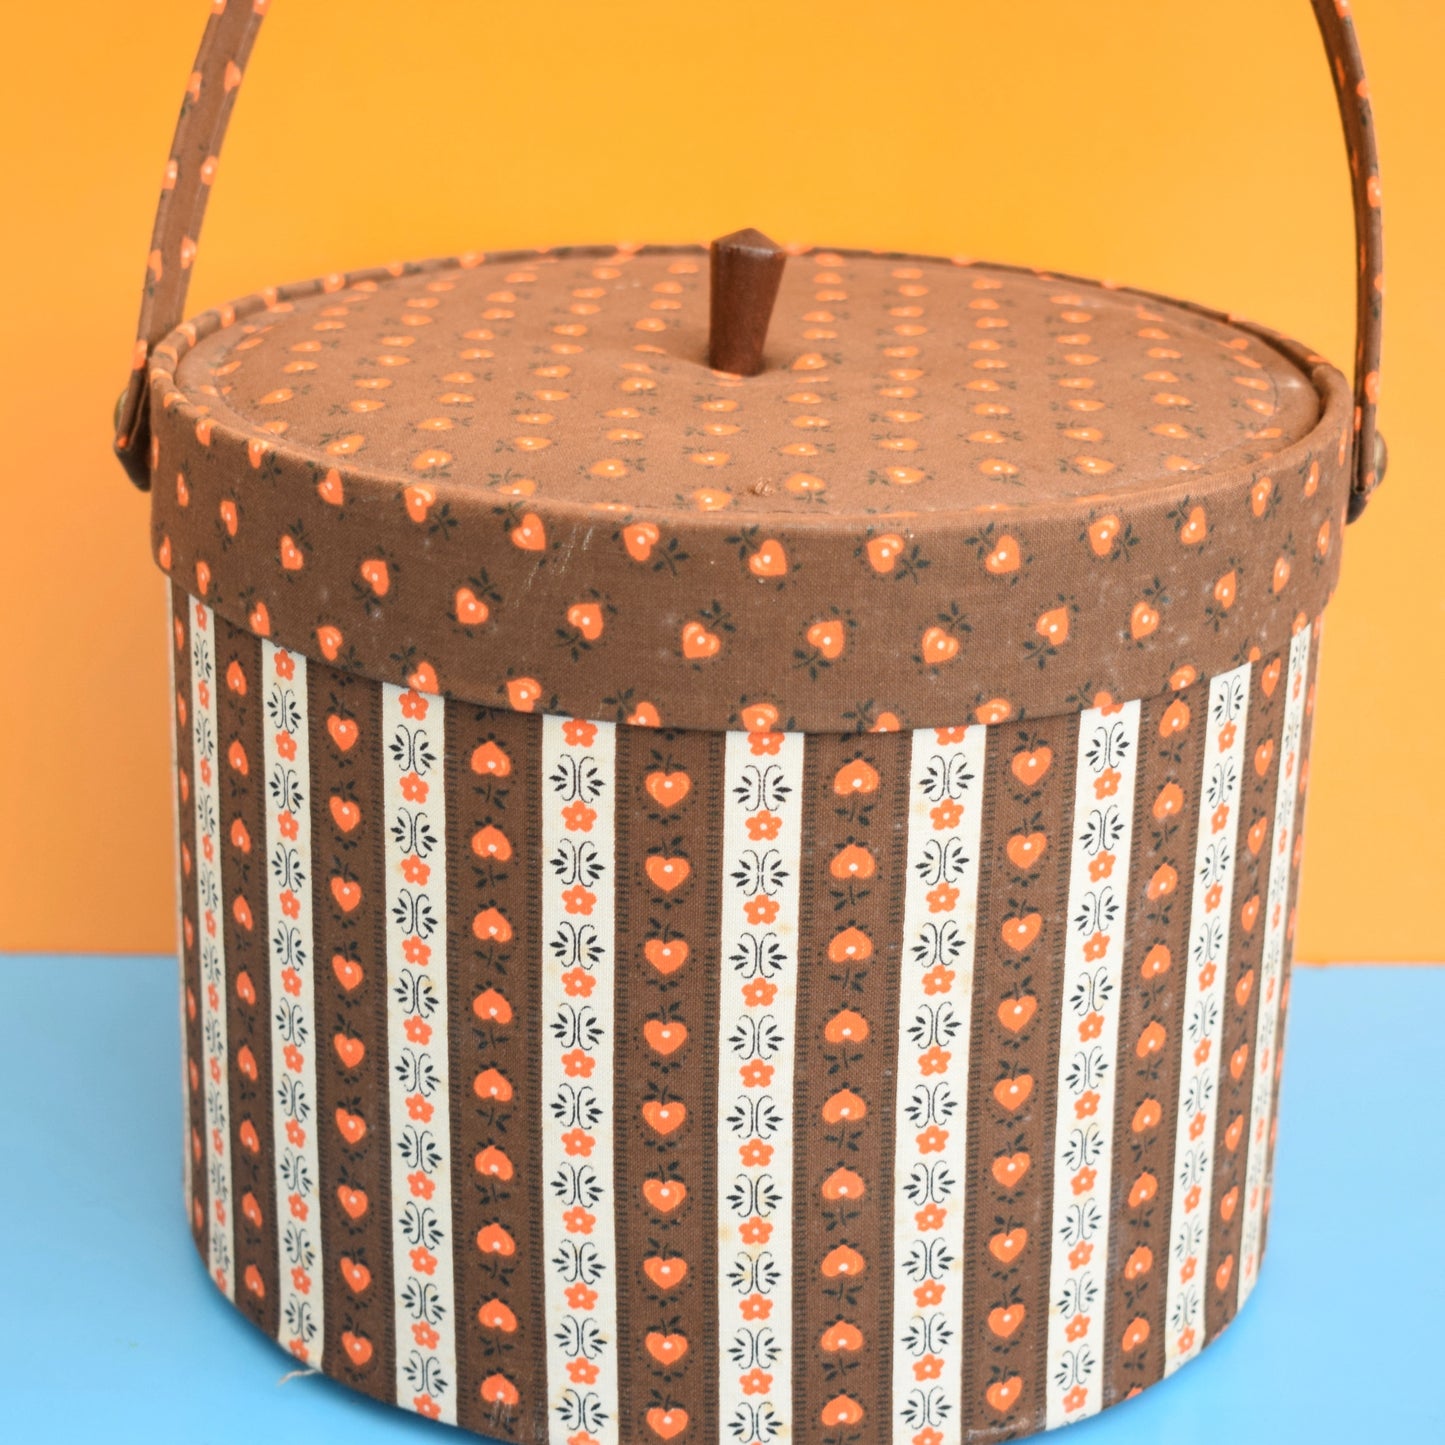 Vintage 1960s Round Sewing / Hobby Box - Brown & Orange